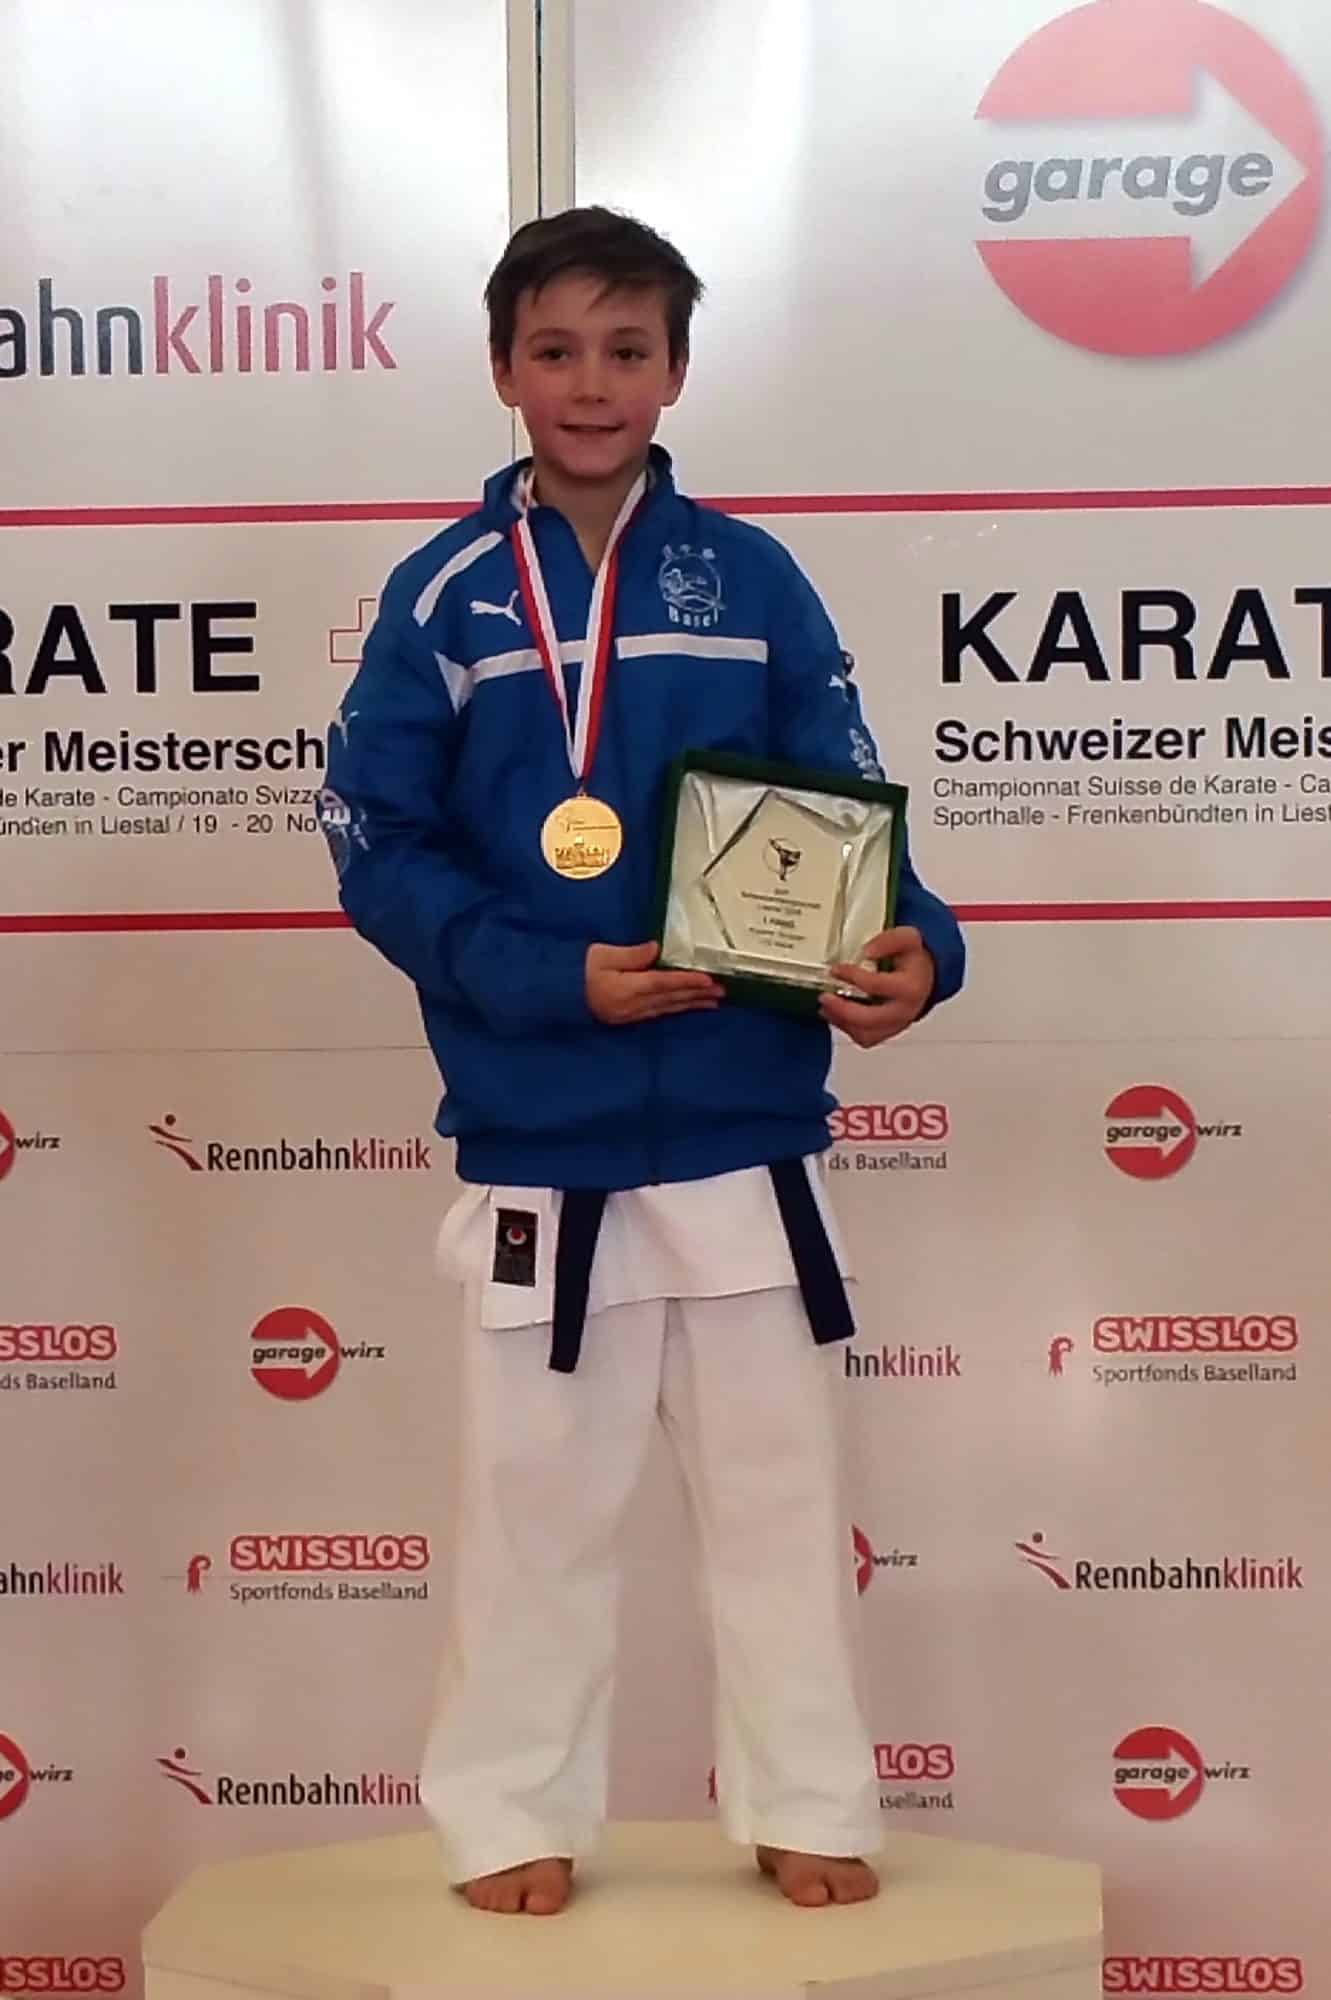 Karatekai Basel - Shobu Schweizermeisterschaften vom 19. und 20. November 2016